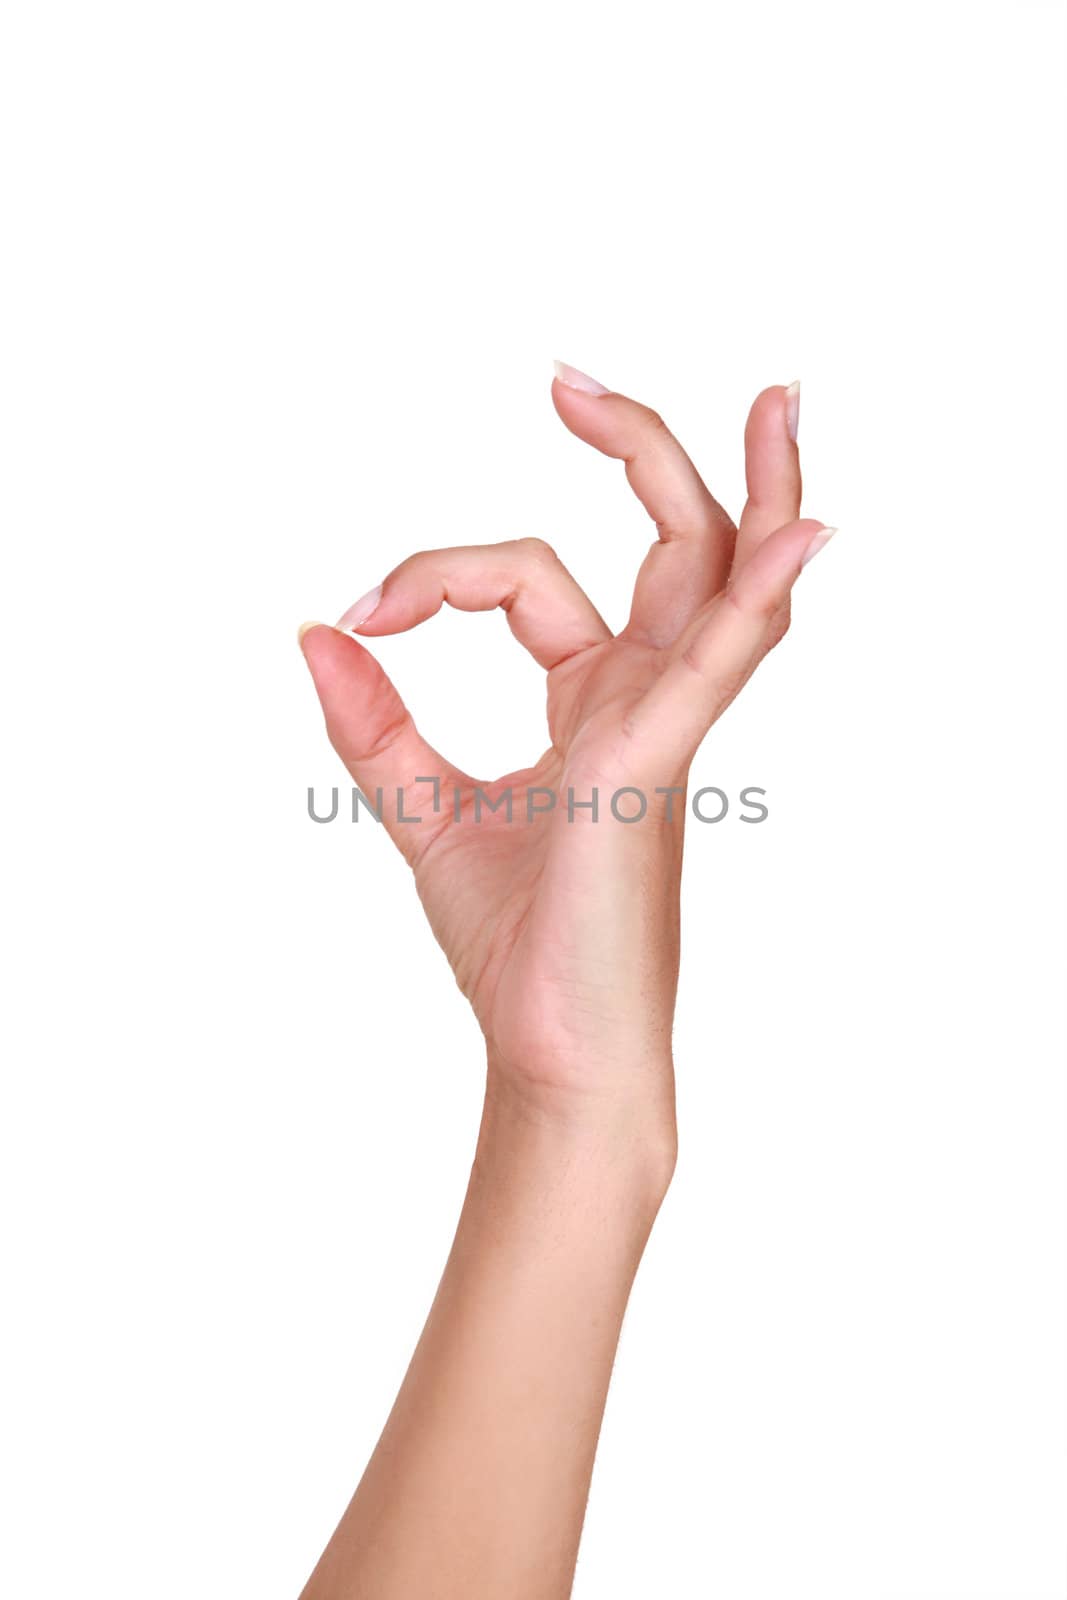 Female hand making an OK gesture